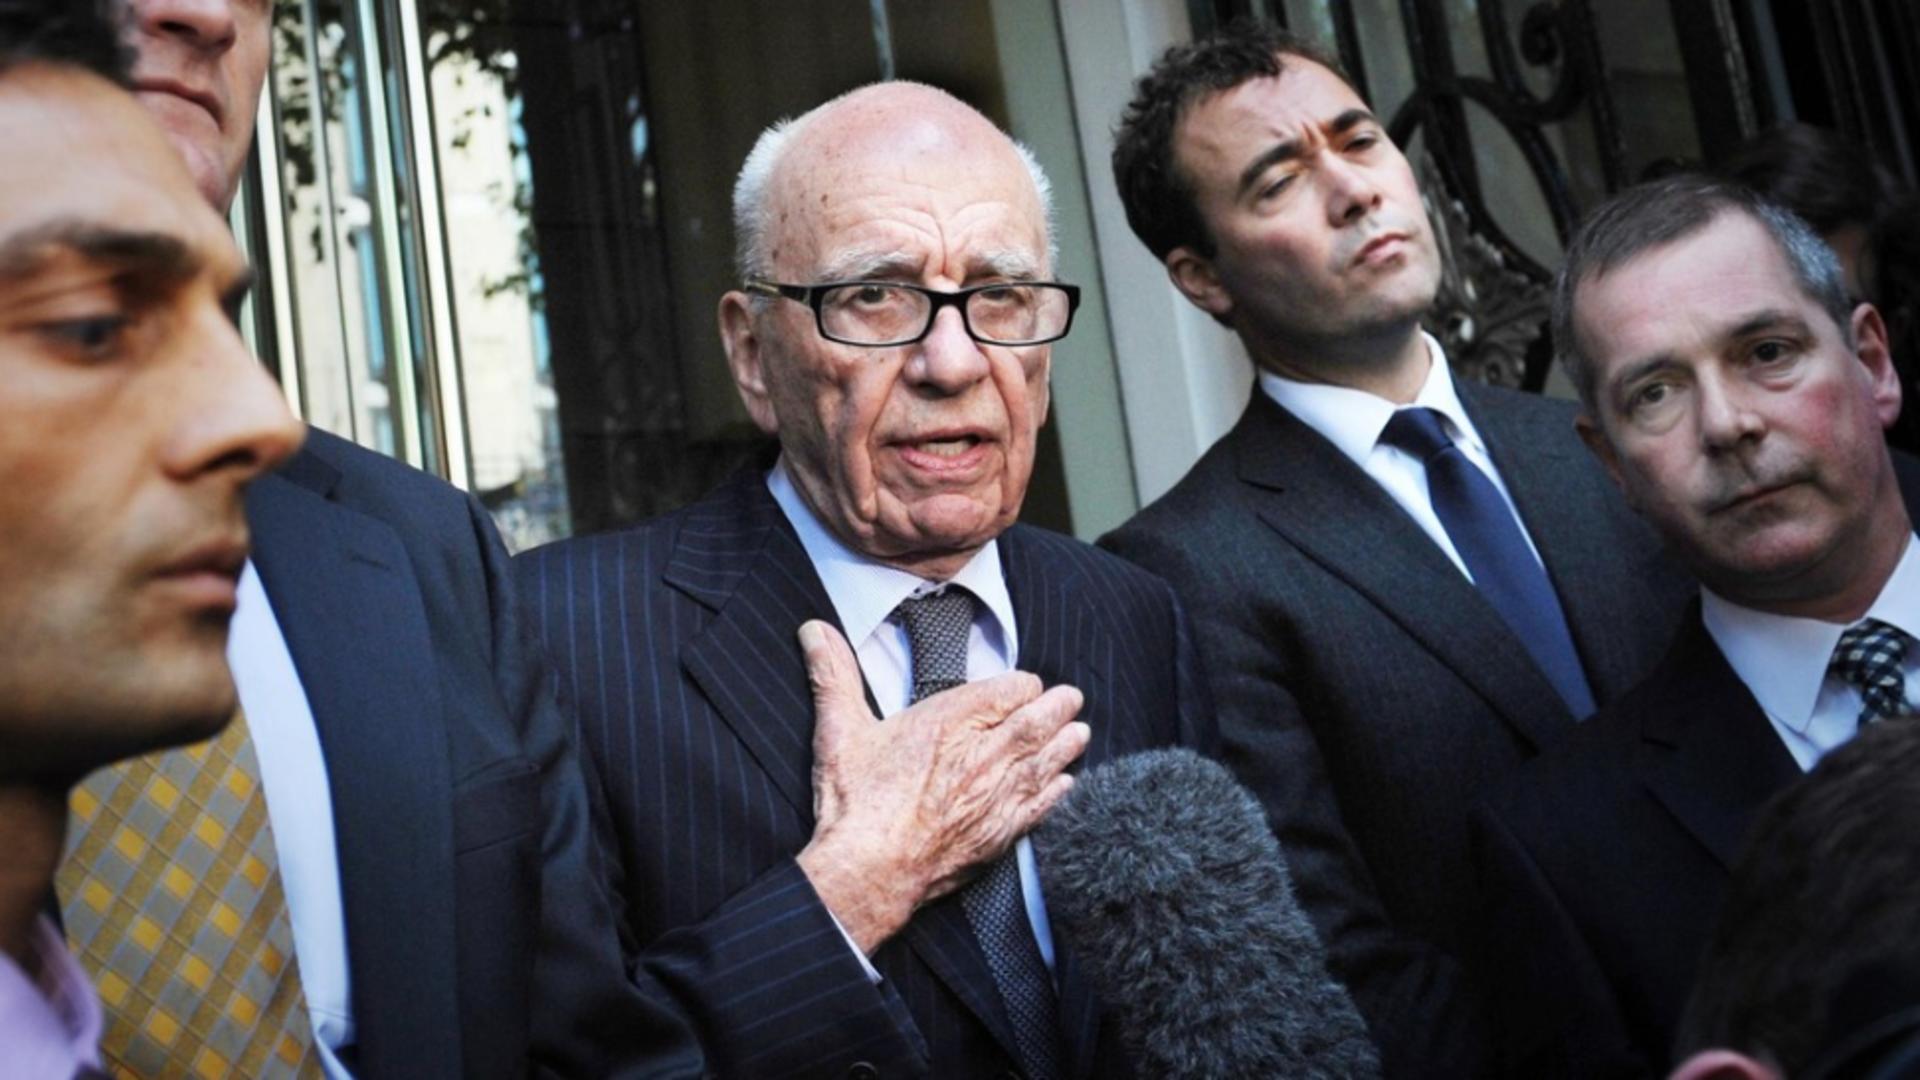 Sfârșitul unei ere: Rupert Murdoch anunță retragerea de la conducerea conglomeratului său media. Cine va prelua frâiele Fox și News Corp